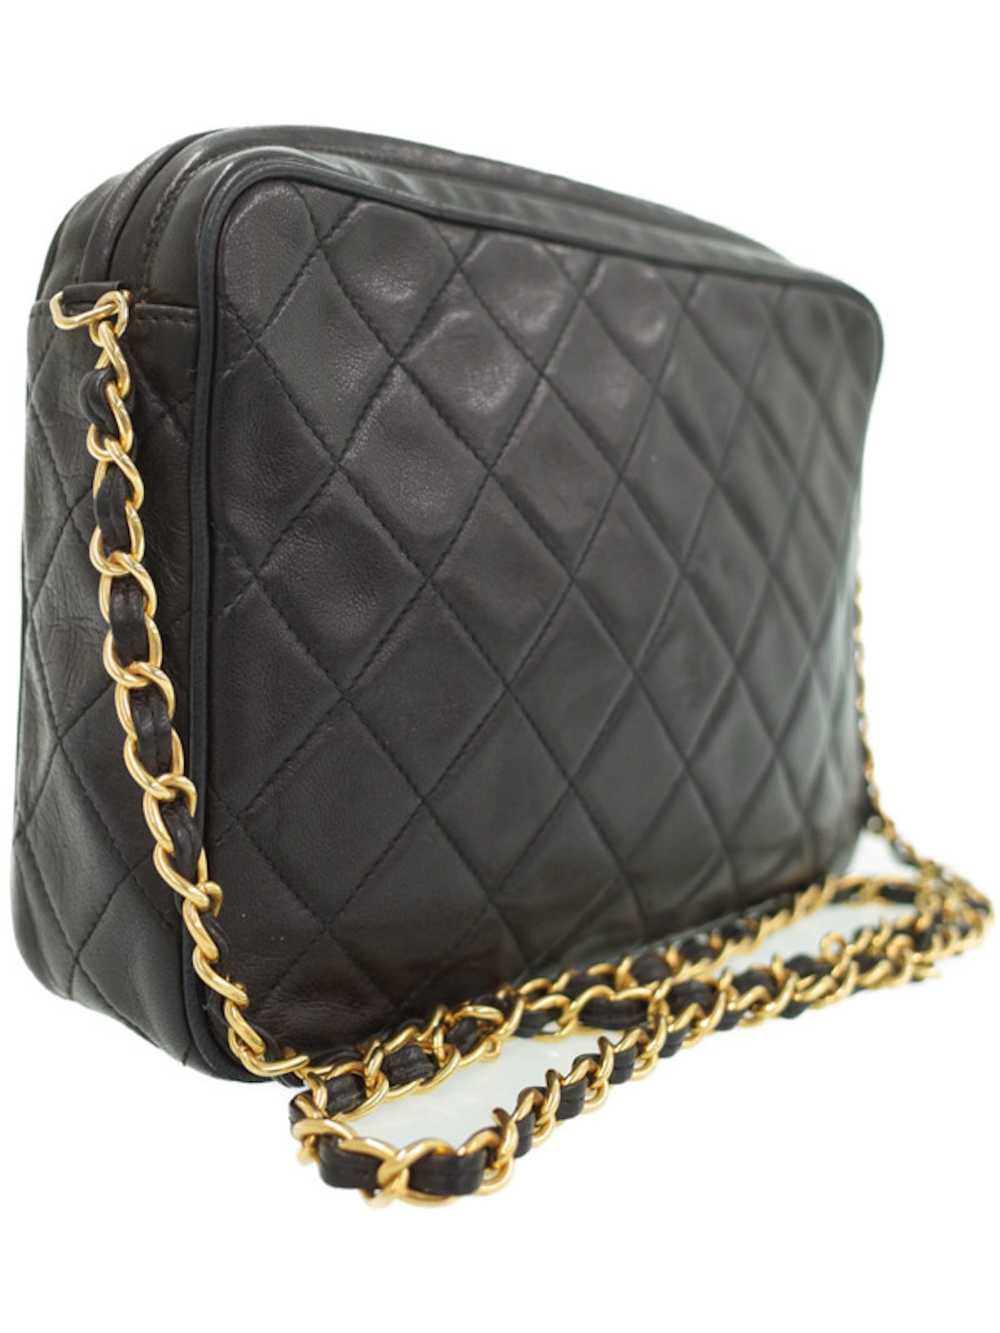 Chanel Chanel Matelasse Chain Shoulder Bag Black - image 2